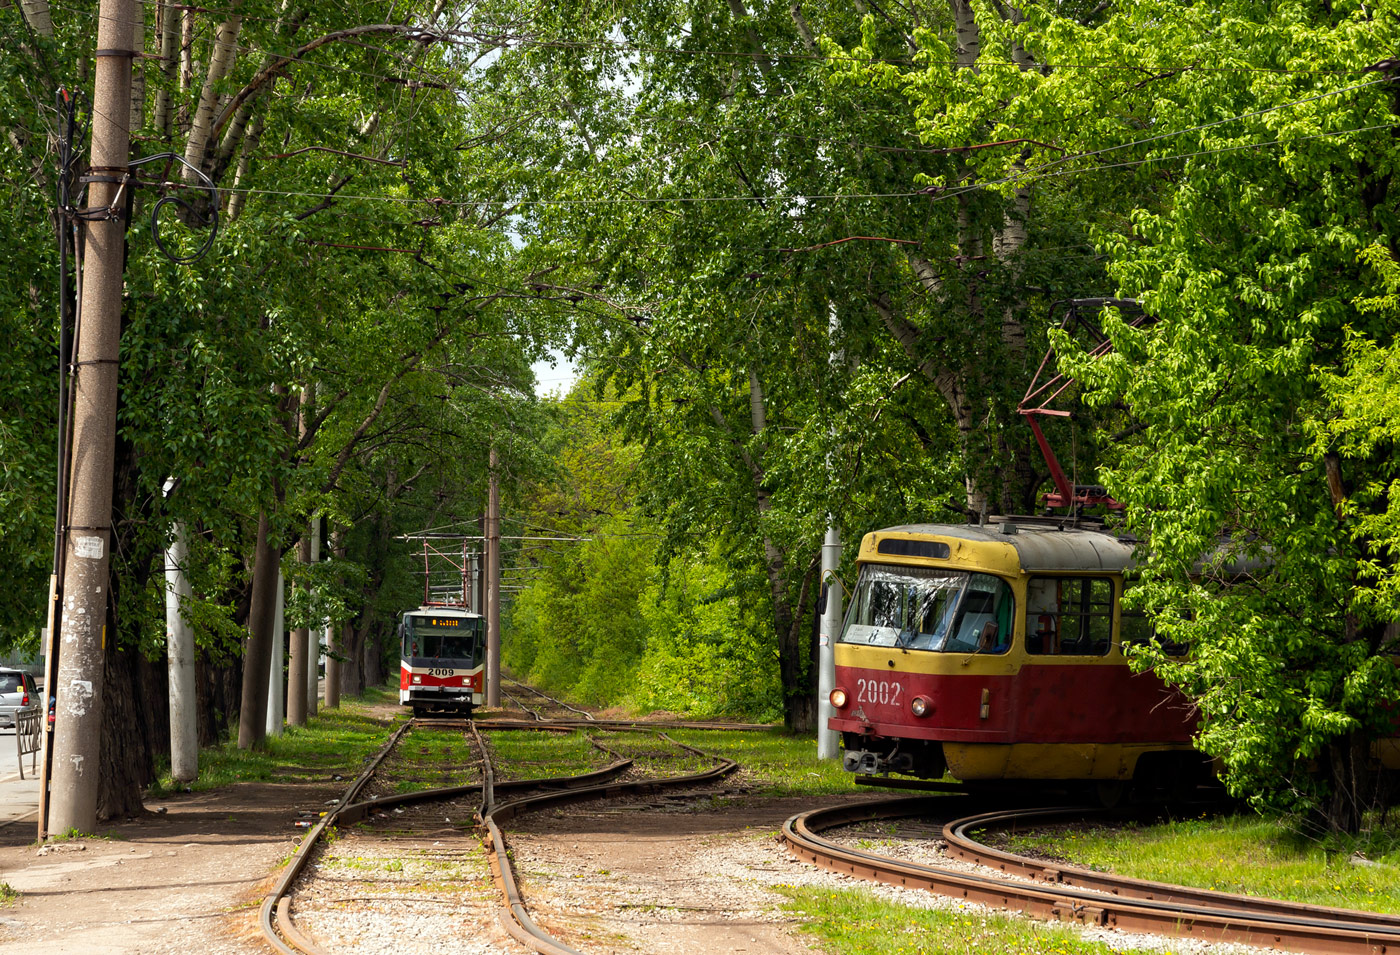 Уфа — Конечные станции и разворотные кольца (трамвай); Уфа — Трамвайная сеть — север